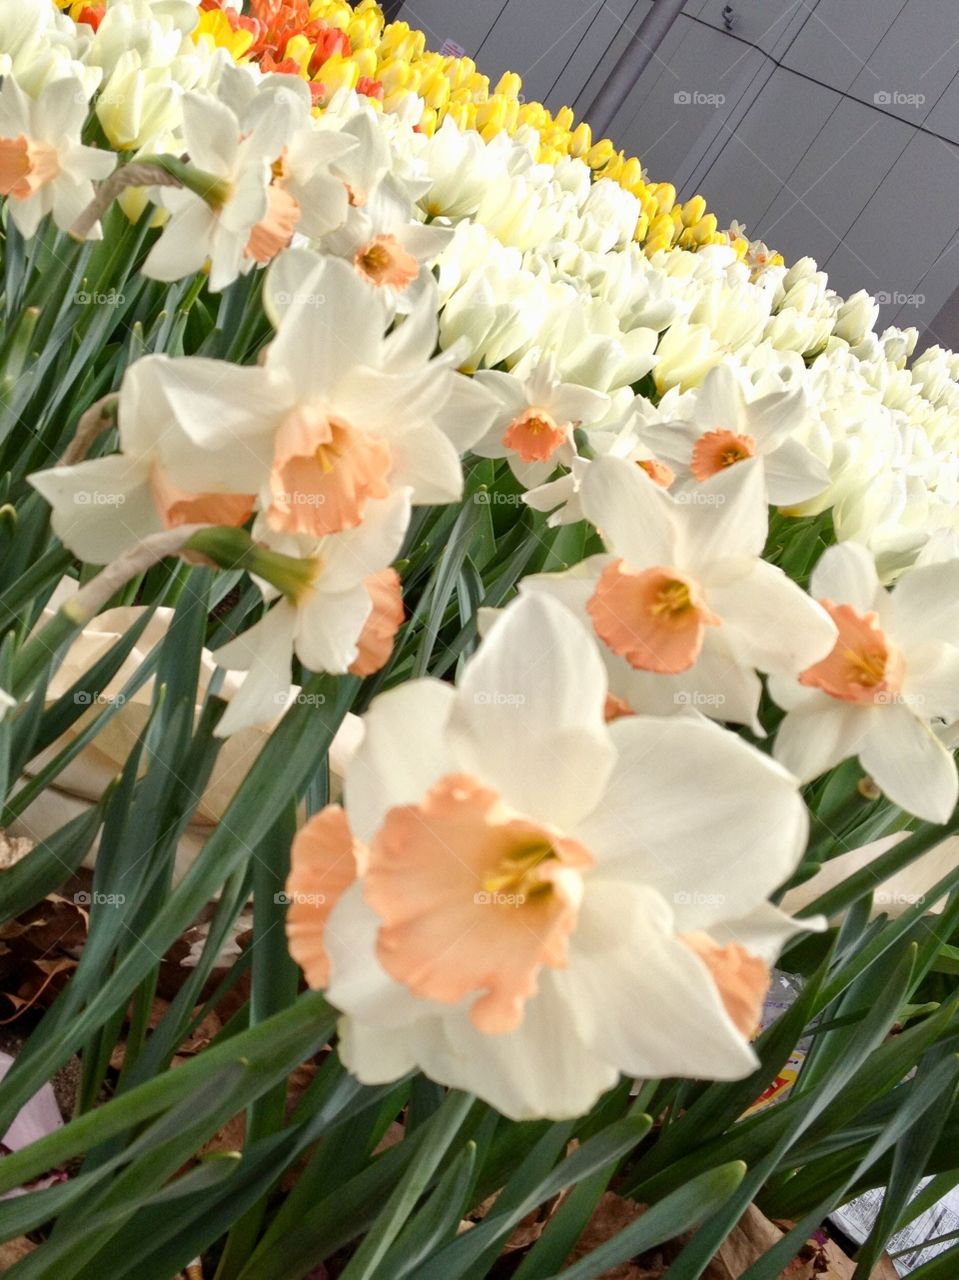 Daffodil Days!